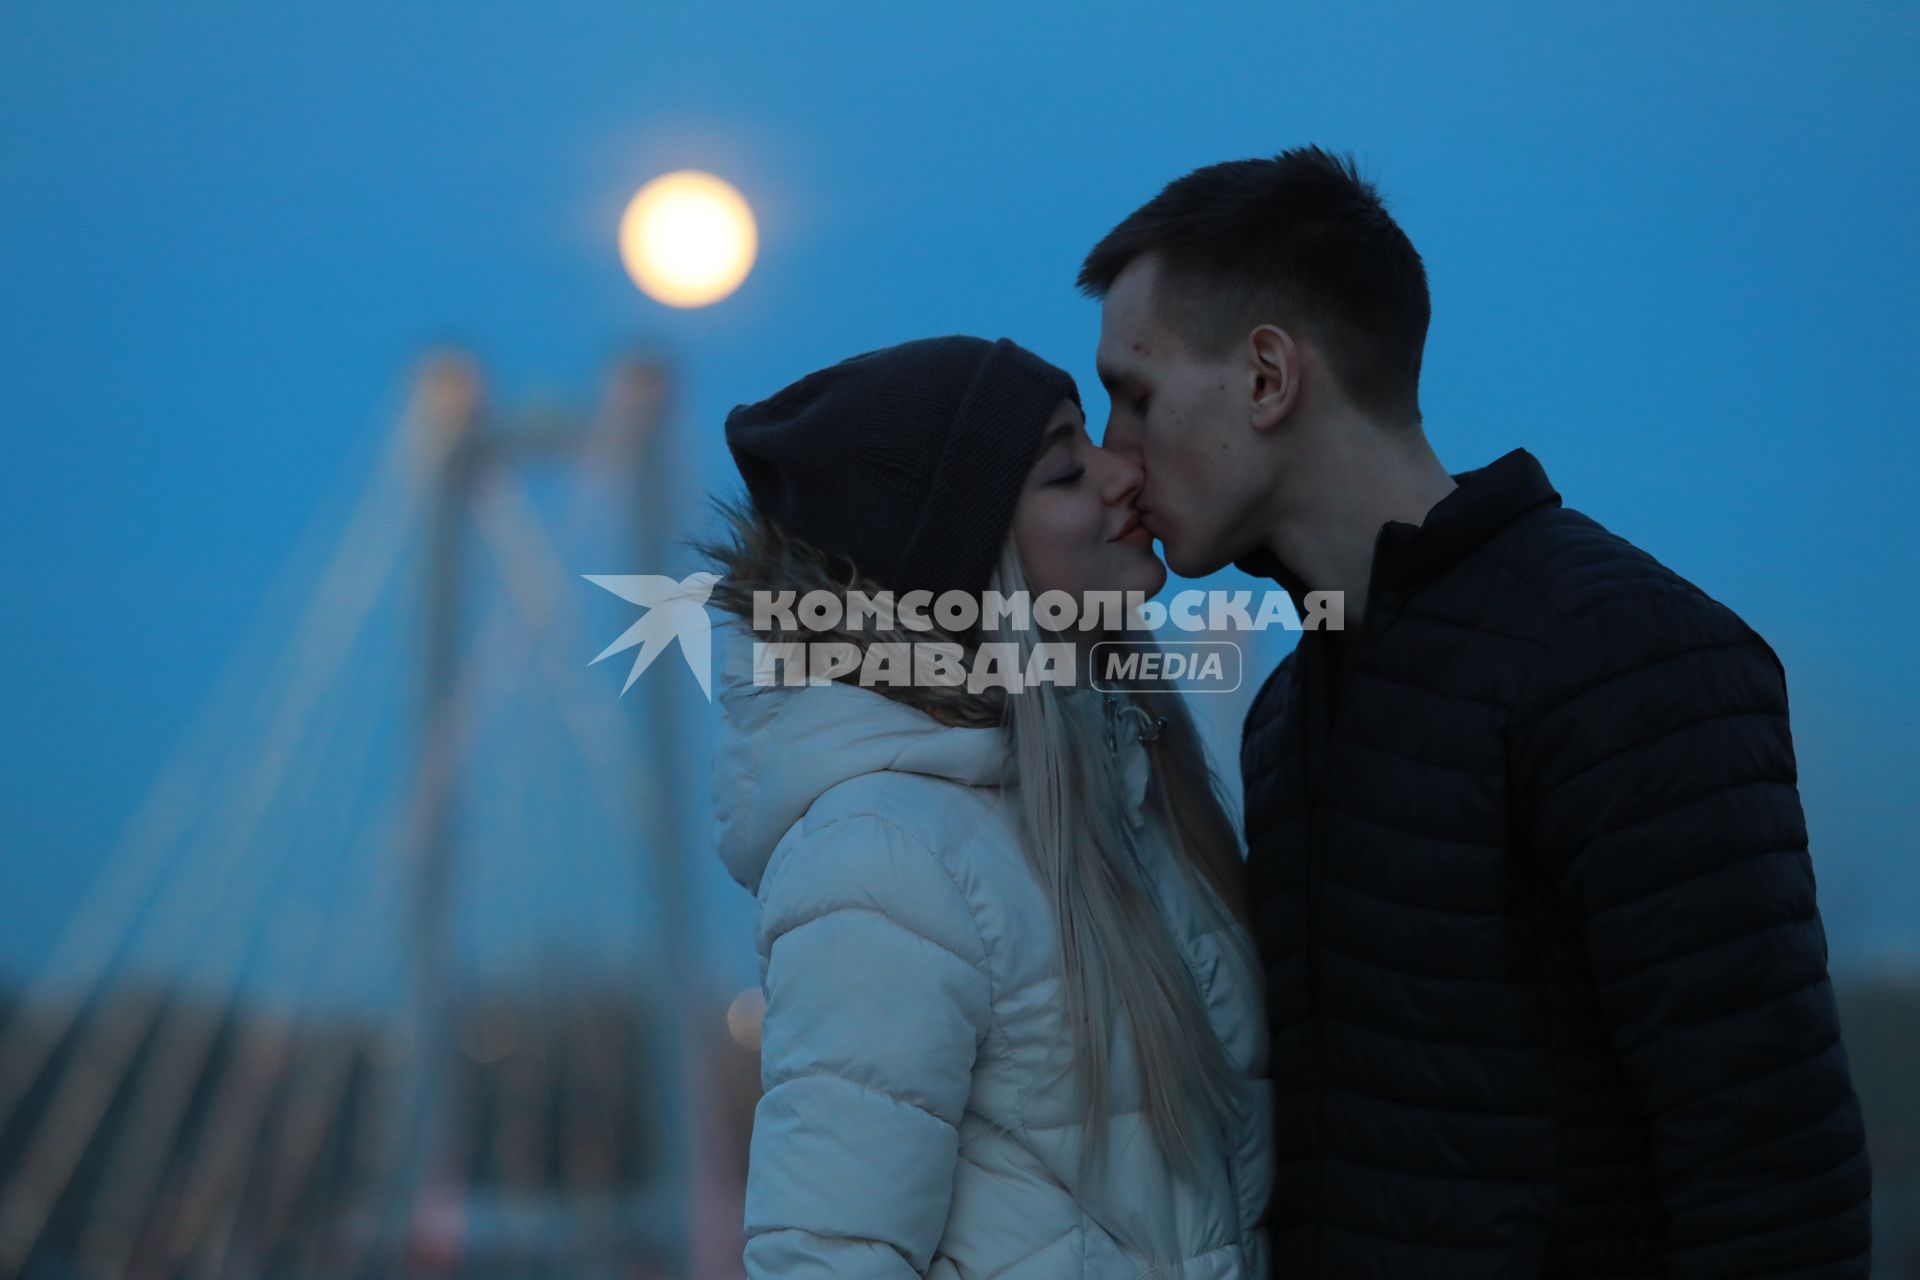 Красноярск.  Молодой человек с девушкой во время свидания.